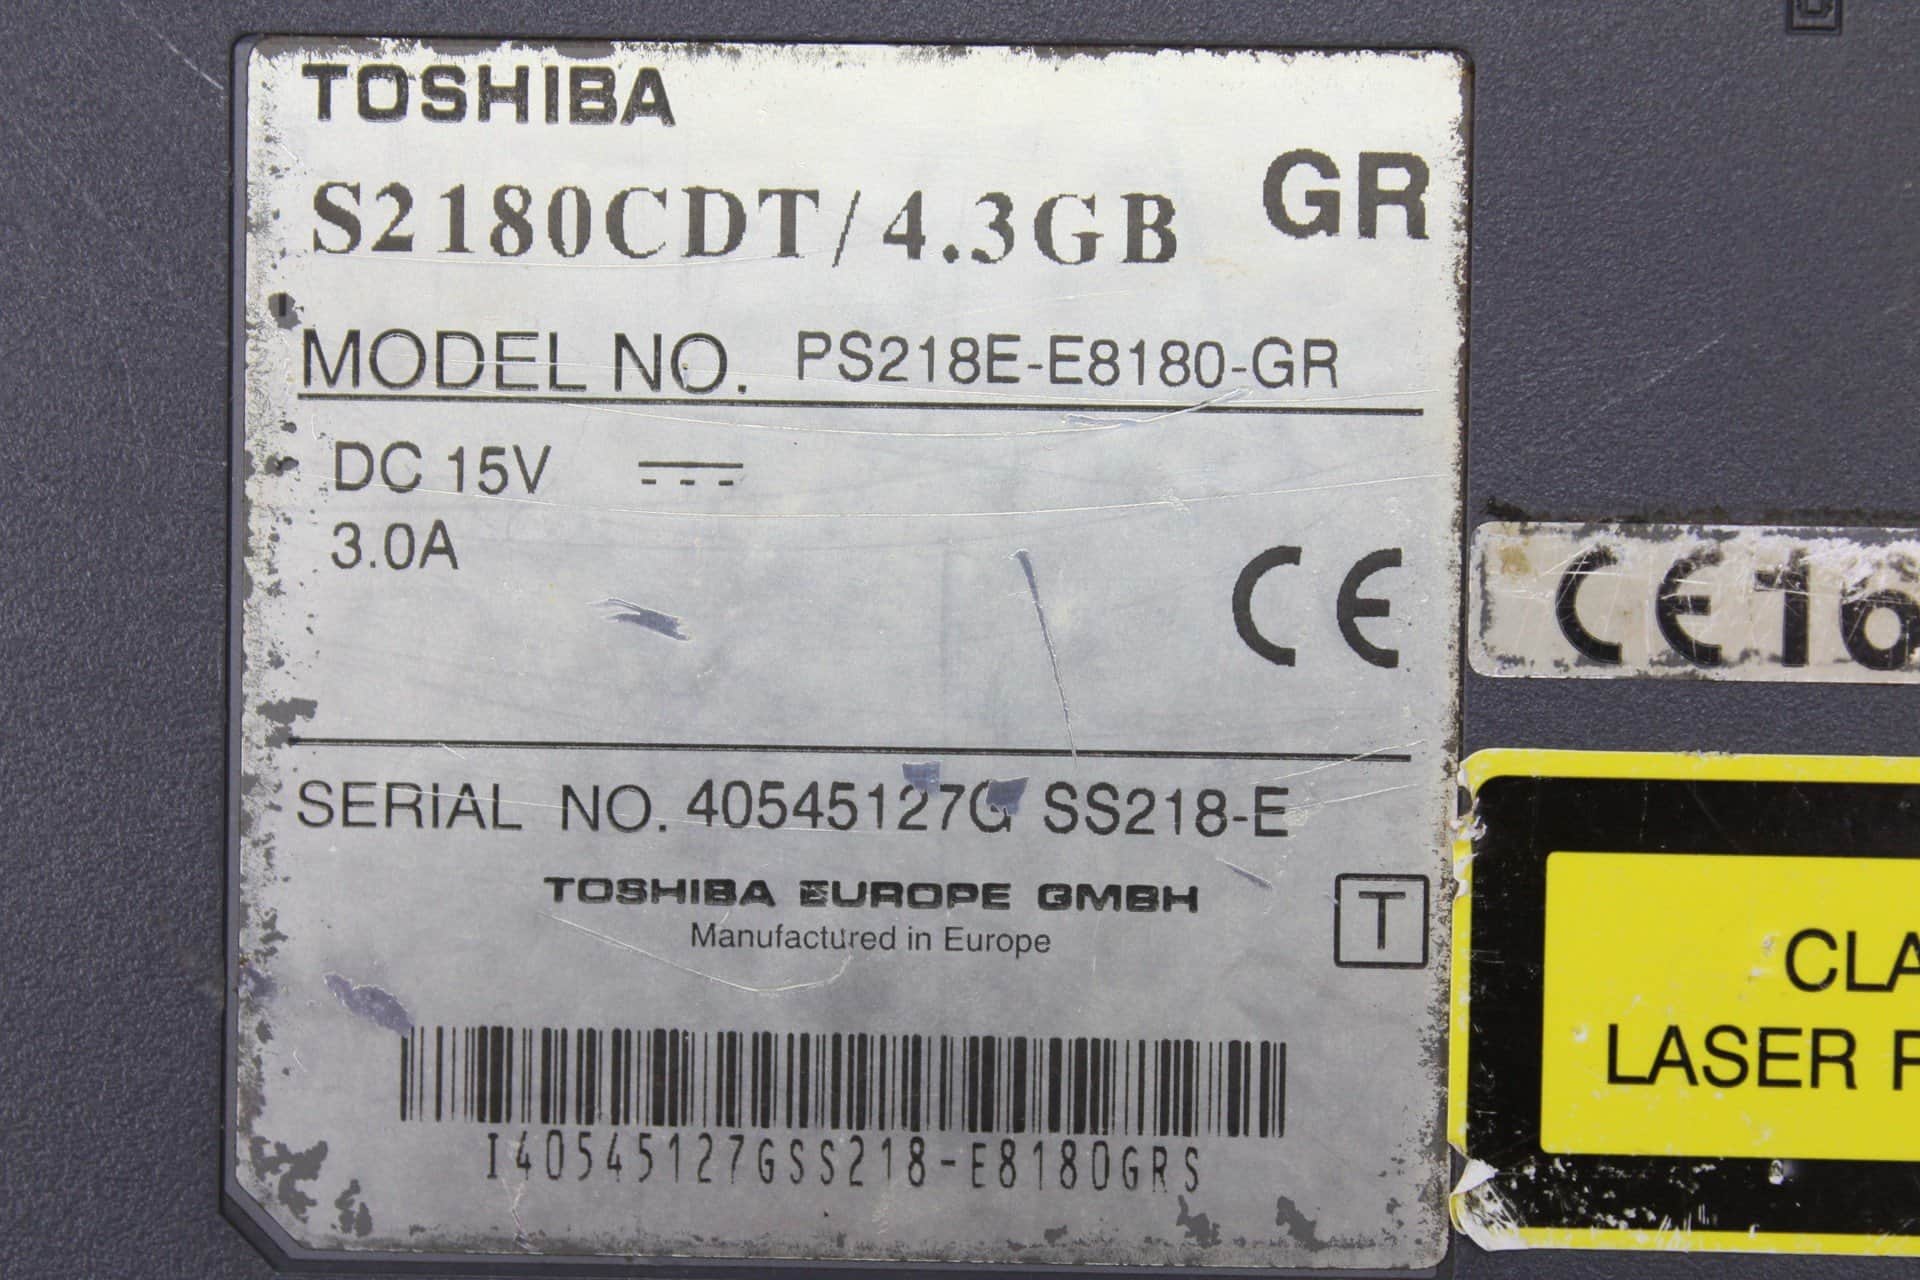 31-Toshiba-Satellite-2180CDT